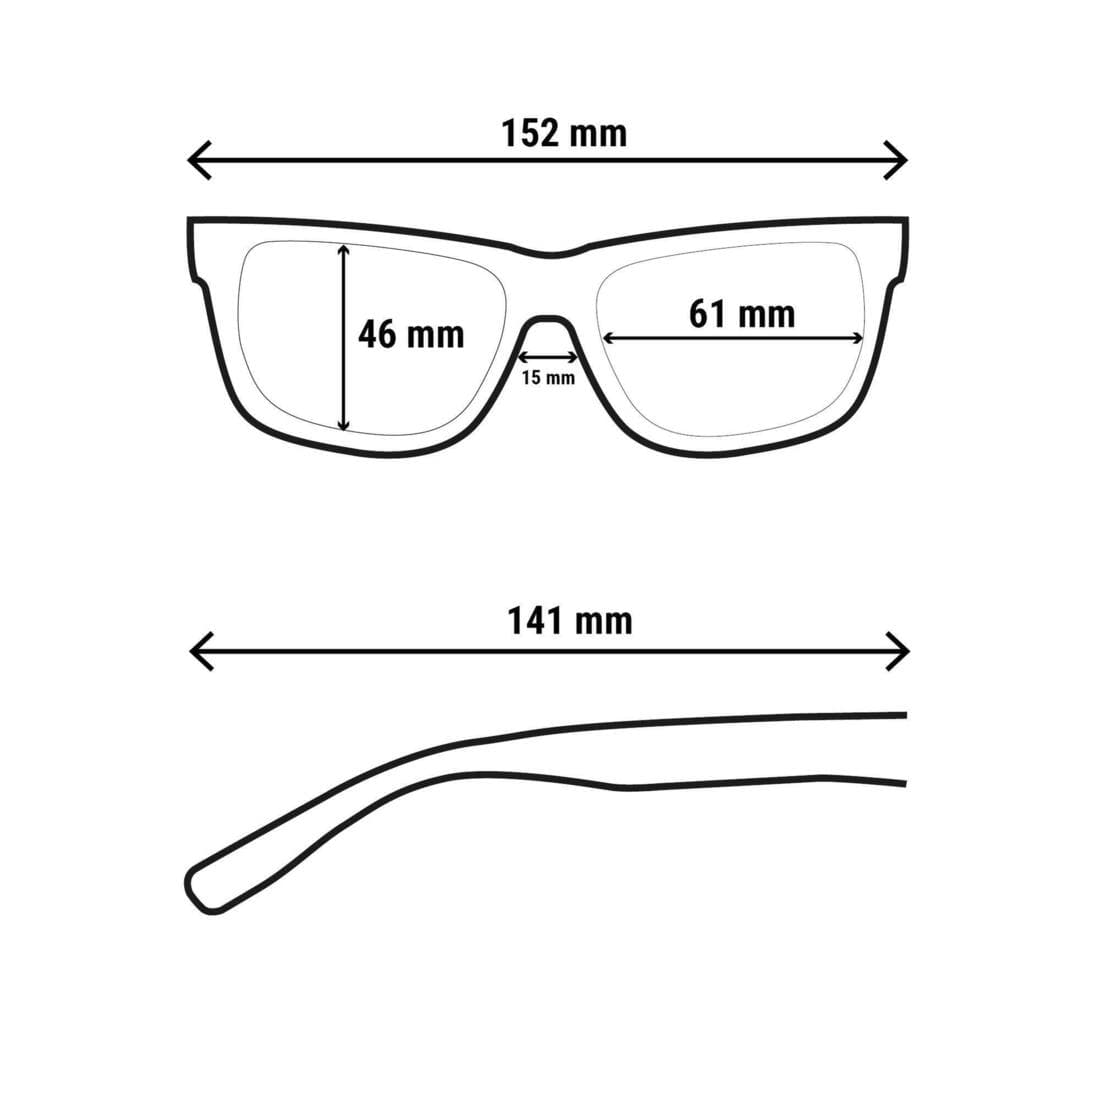 Sur-lunettes - MH OTG 500 - adulte - polarisants catégorie 3 QUECHUA